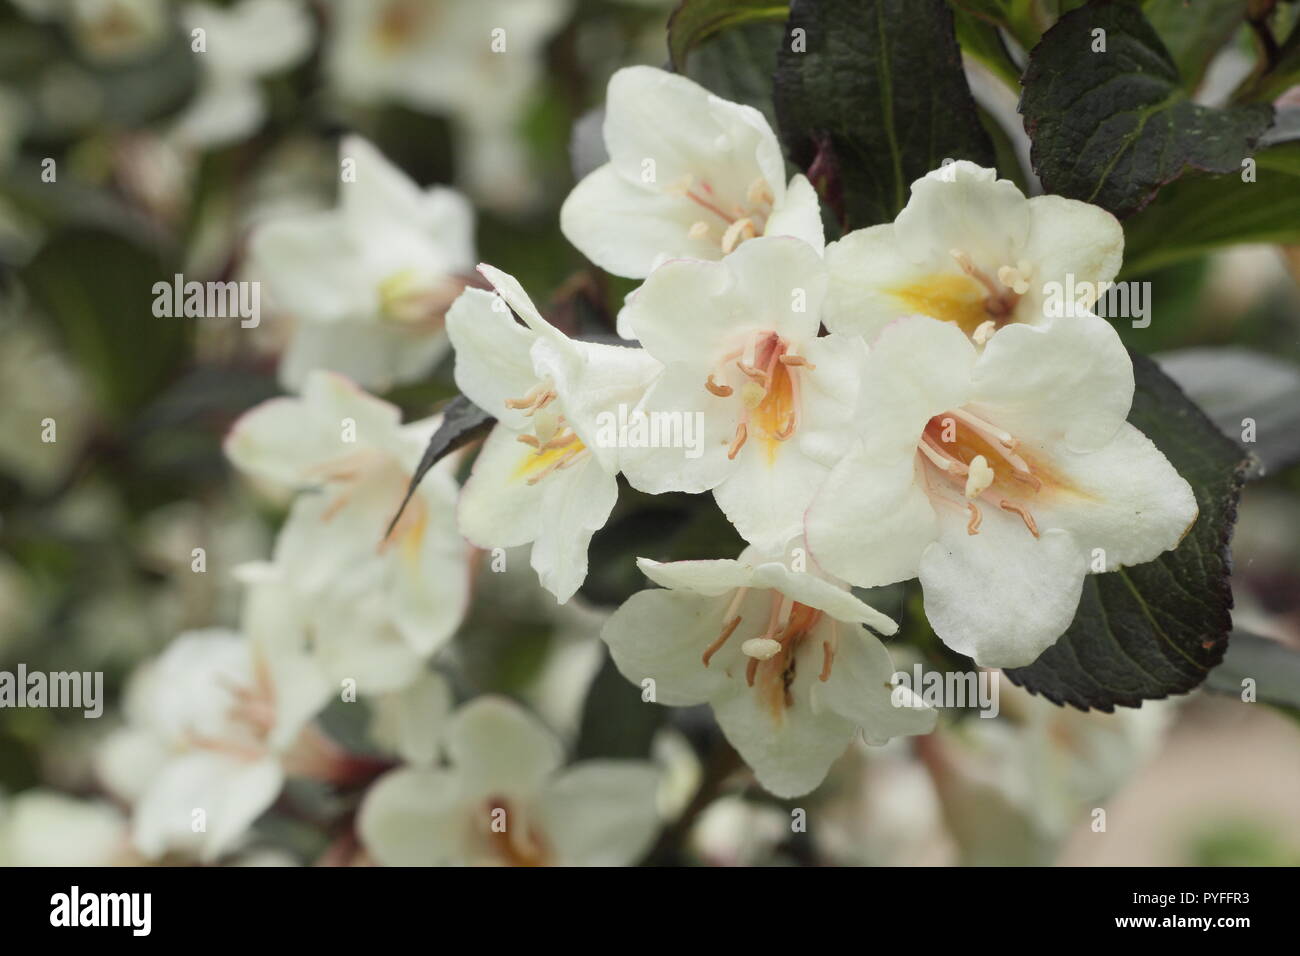 Blüten von Weigela 'Ebenholz und Elfenbein' sommergrüne Strauch in einen Englischen Garten Grenze, Frühling, Großbritannien Stockfoto